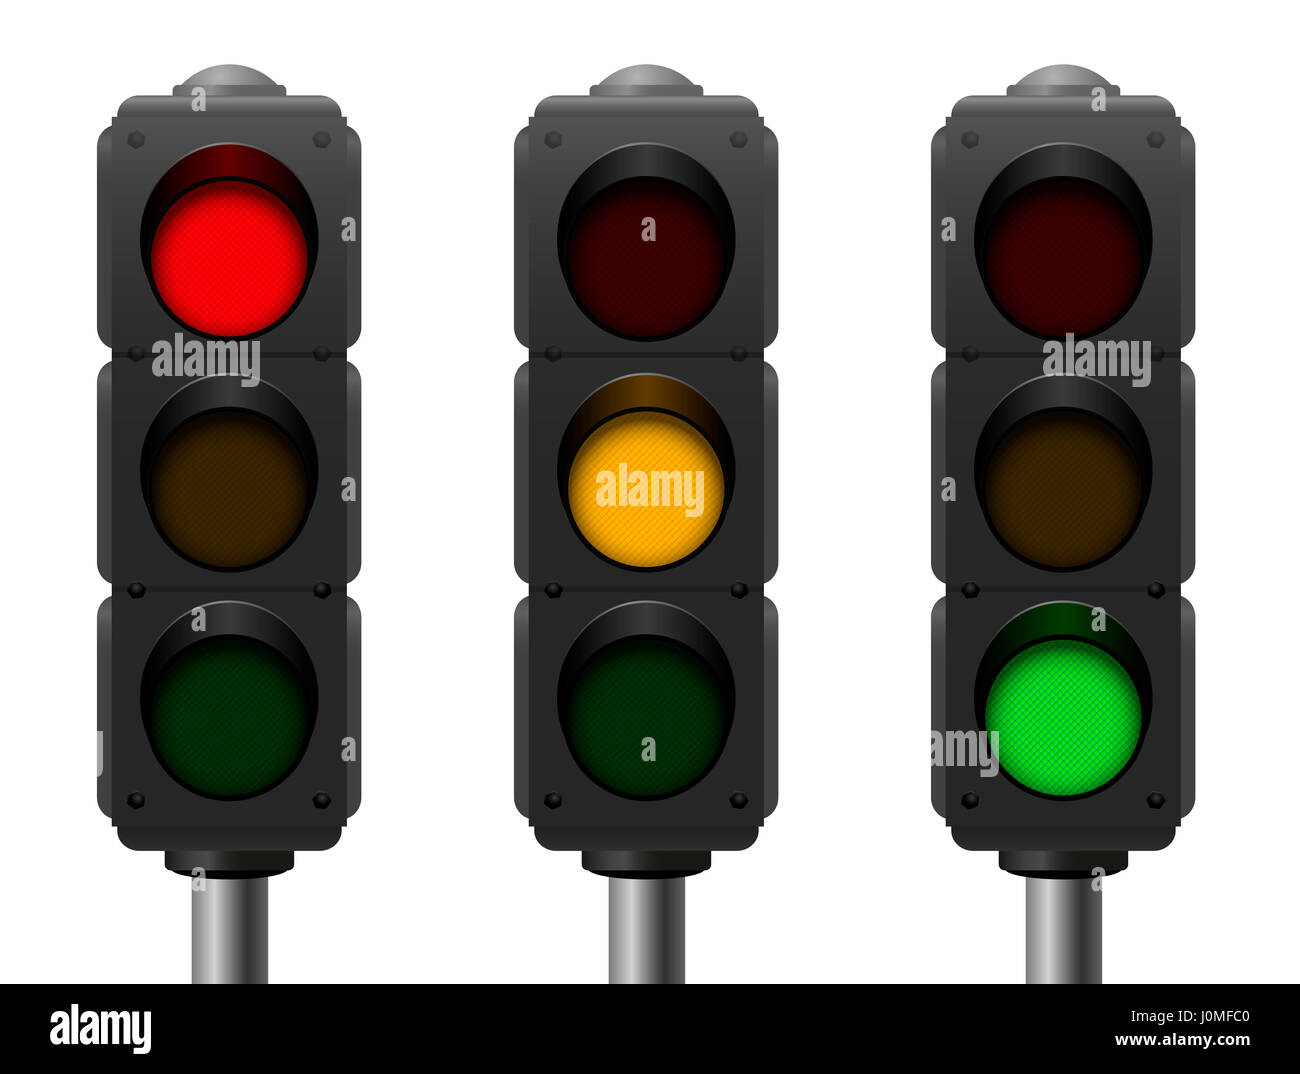 Semaforo con tre diversi segnali - rosso, giallo e verde - realistiche tridimensionali illustrazione isolato su sfondo bianco. Foto Stock